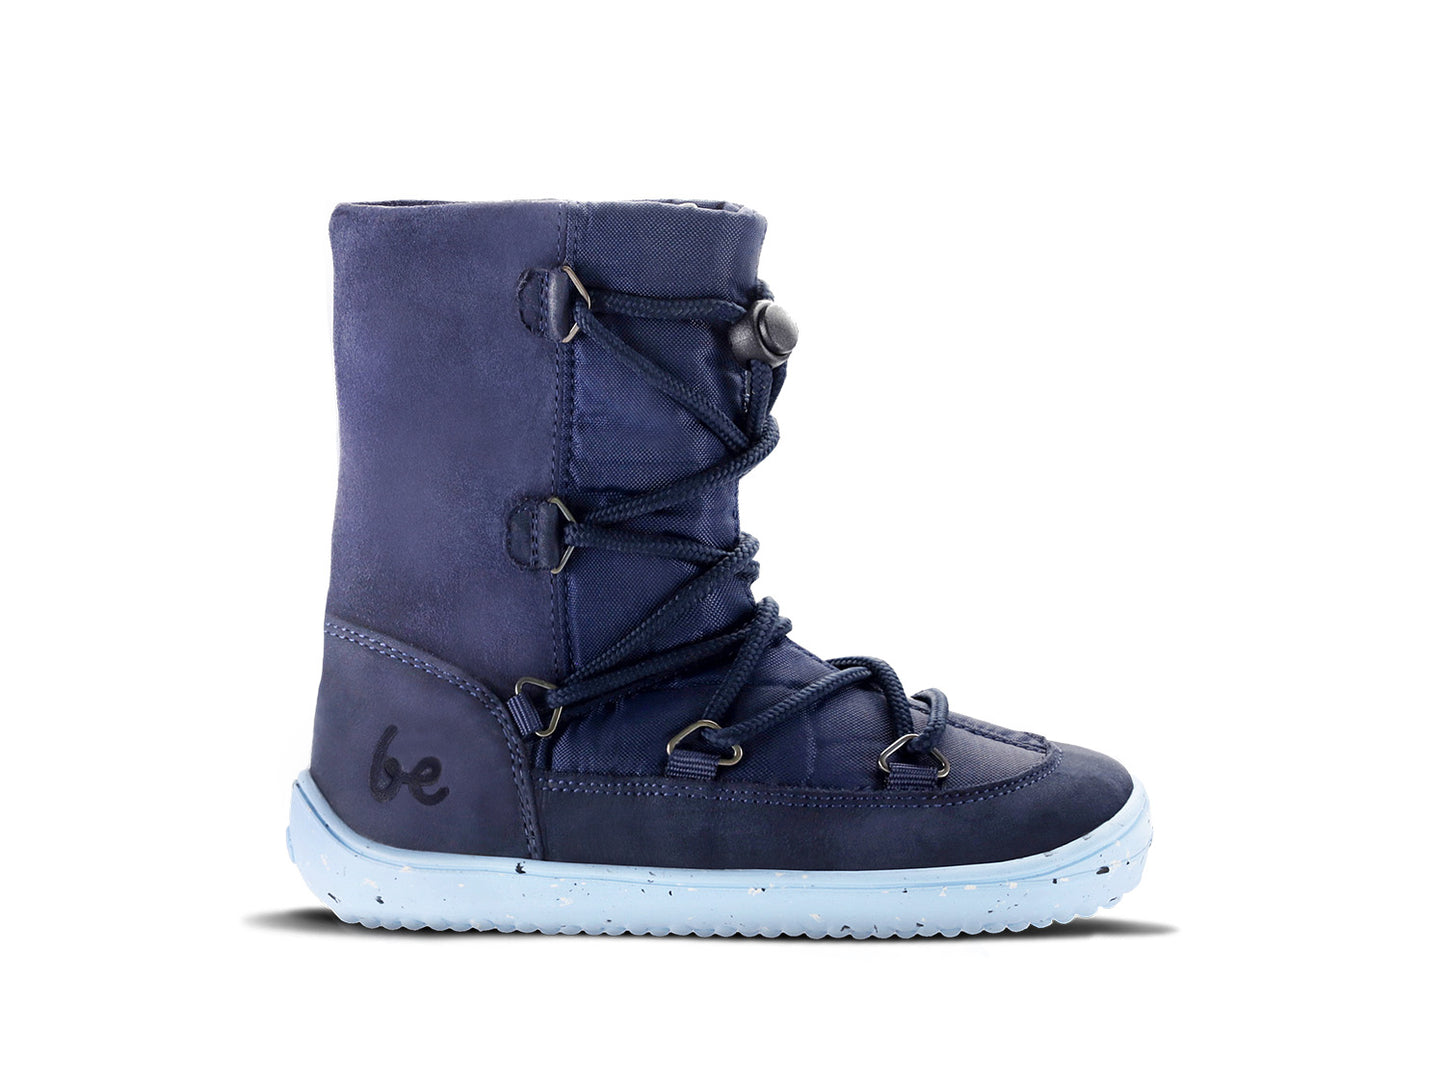 Scarpe invernali da ragazzo Be Lenka Snowfox Kids 2.0 a piedi nudi - Blu scuro e chiaro